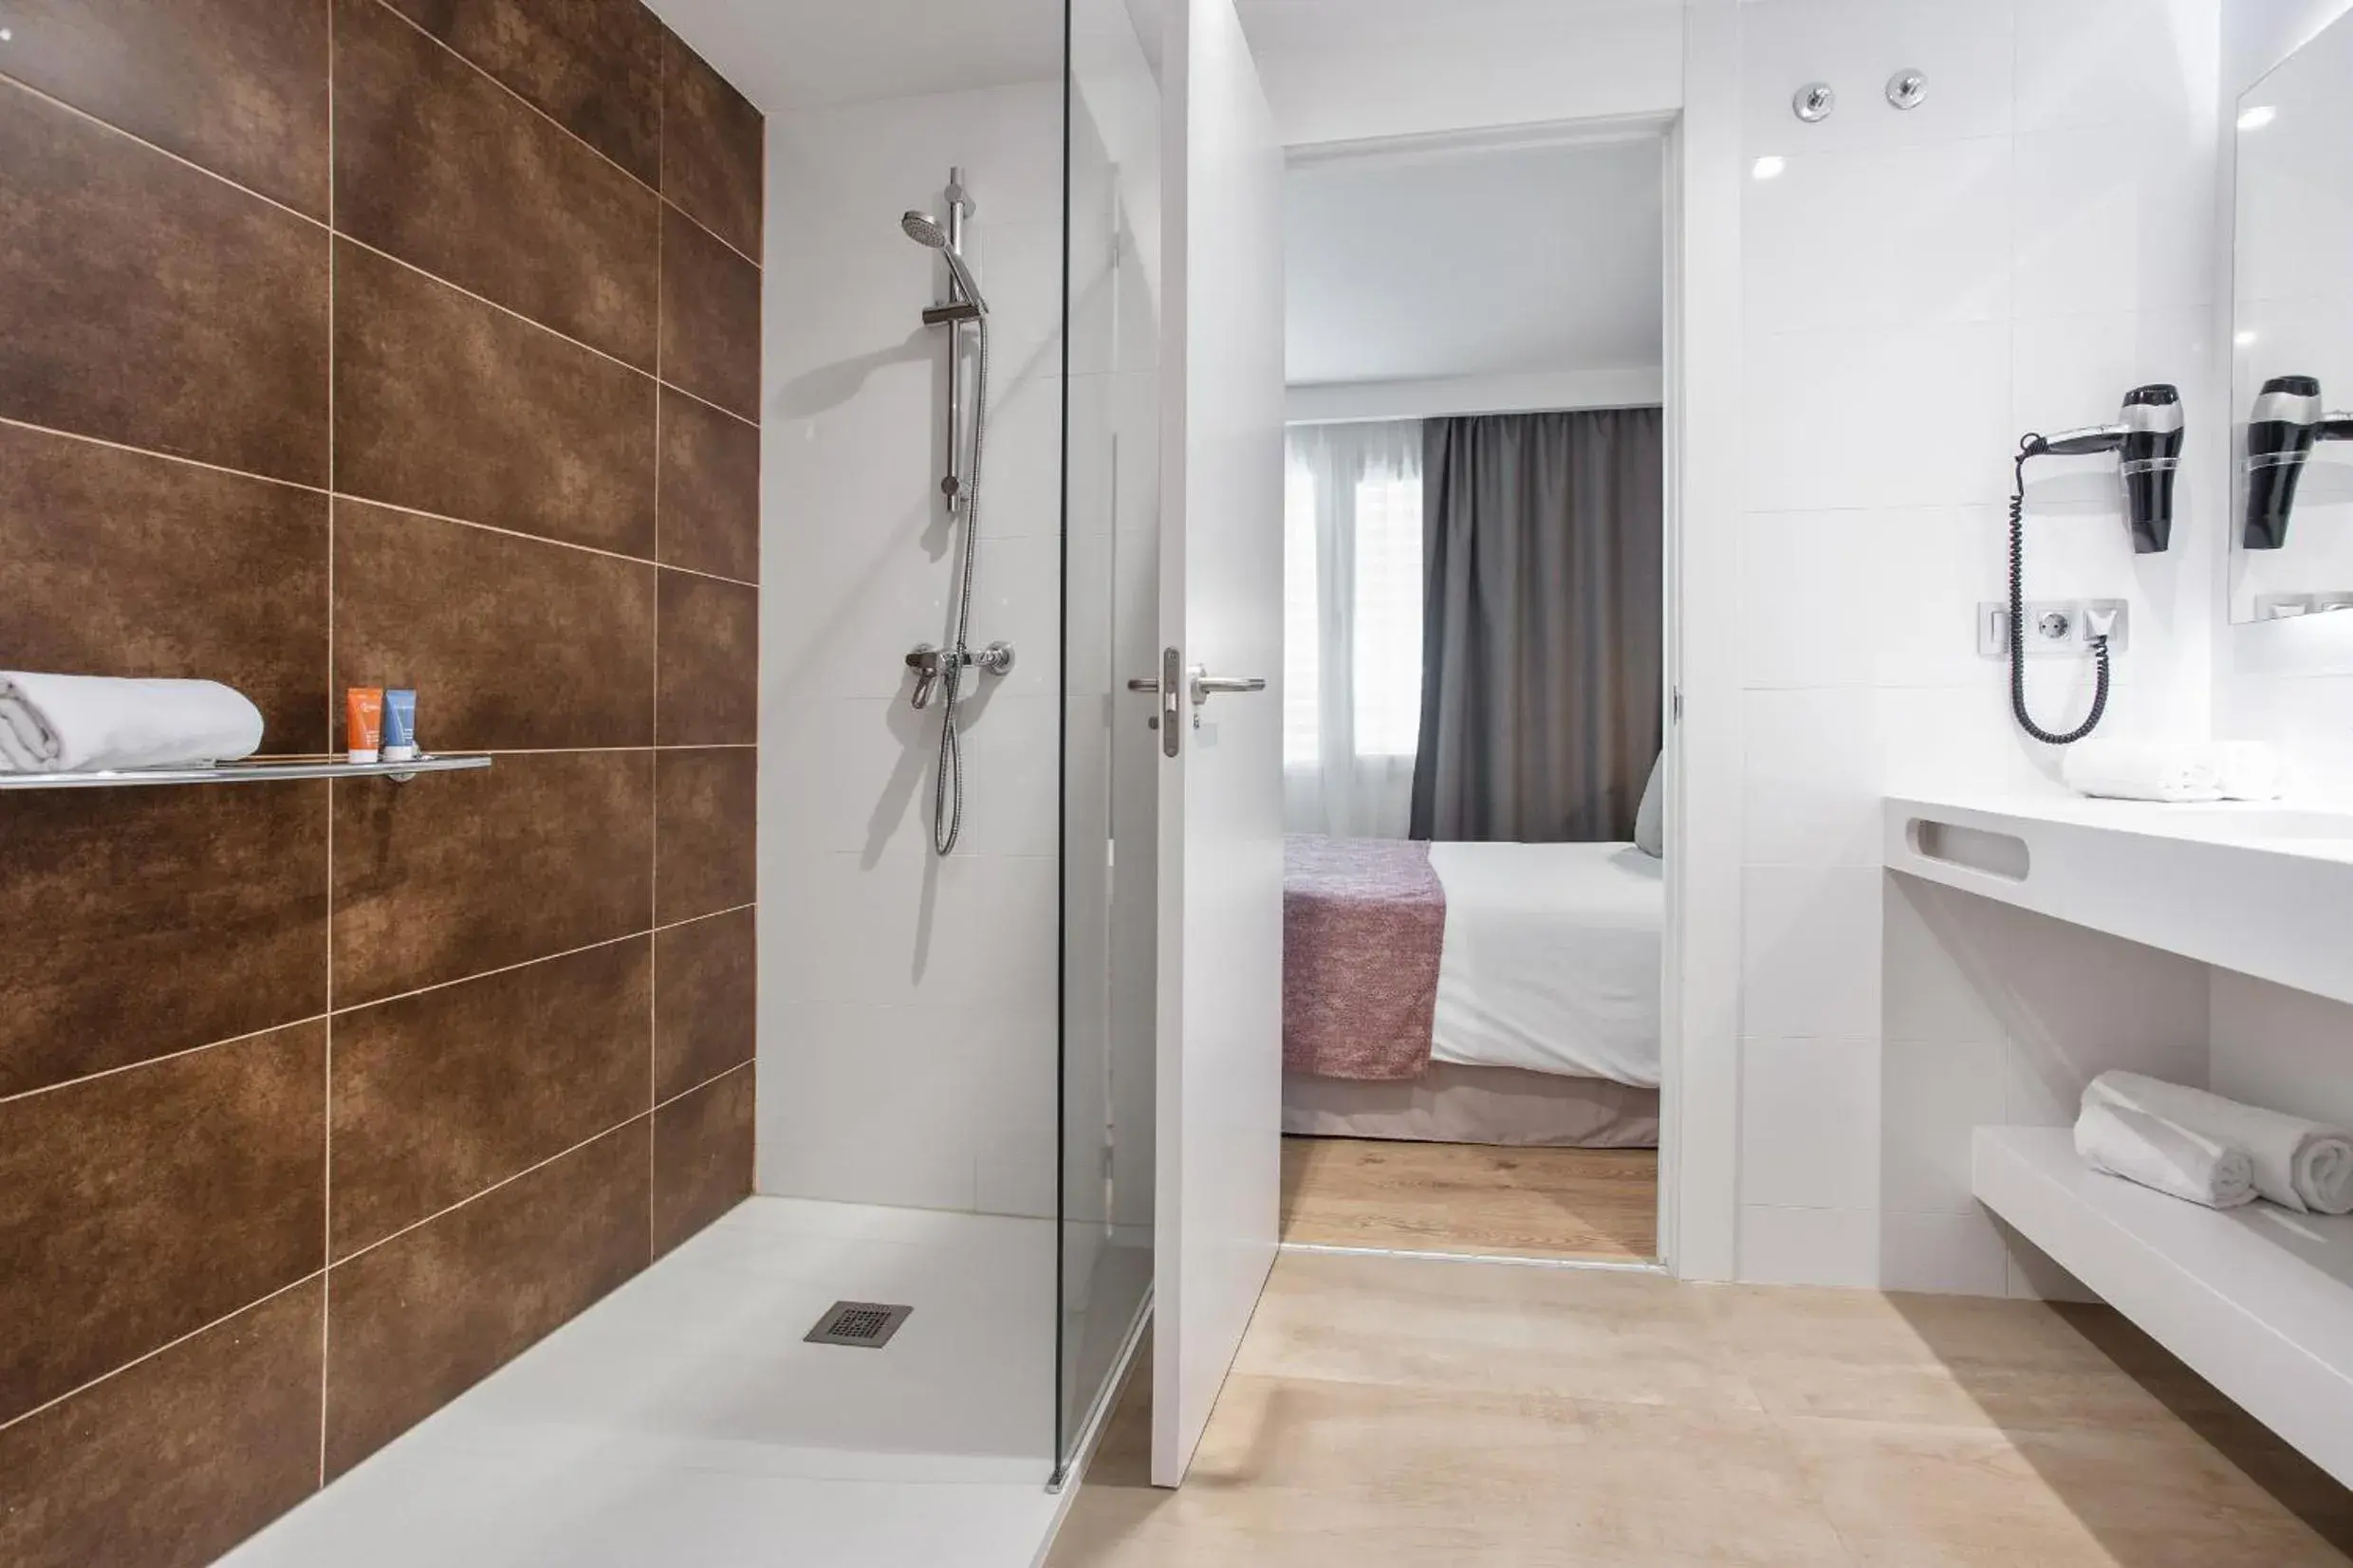 Bathroom in Pierre & Vacances Apartamentos Edificio Eurobuilding 2